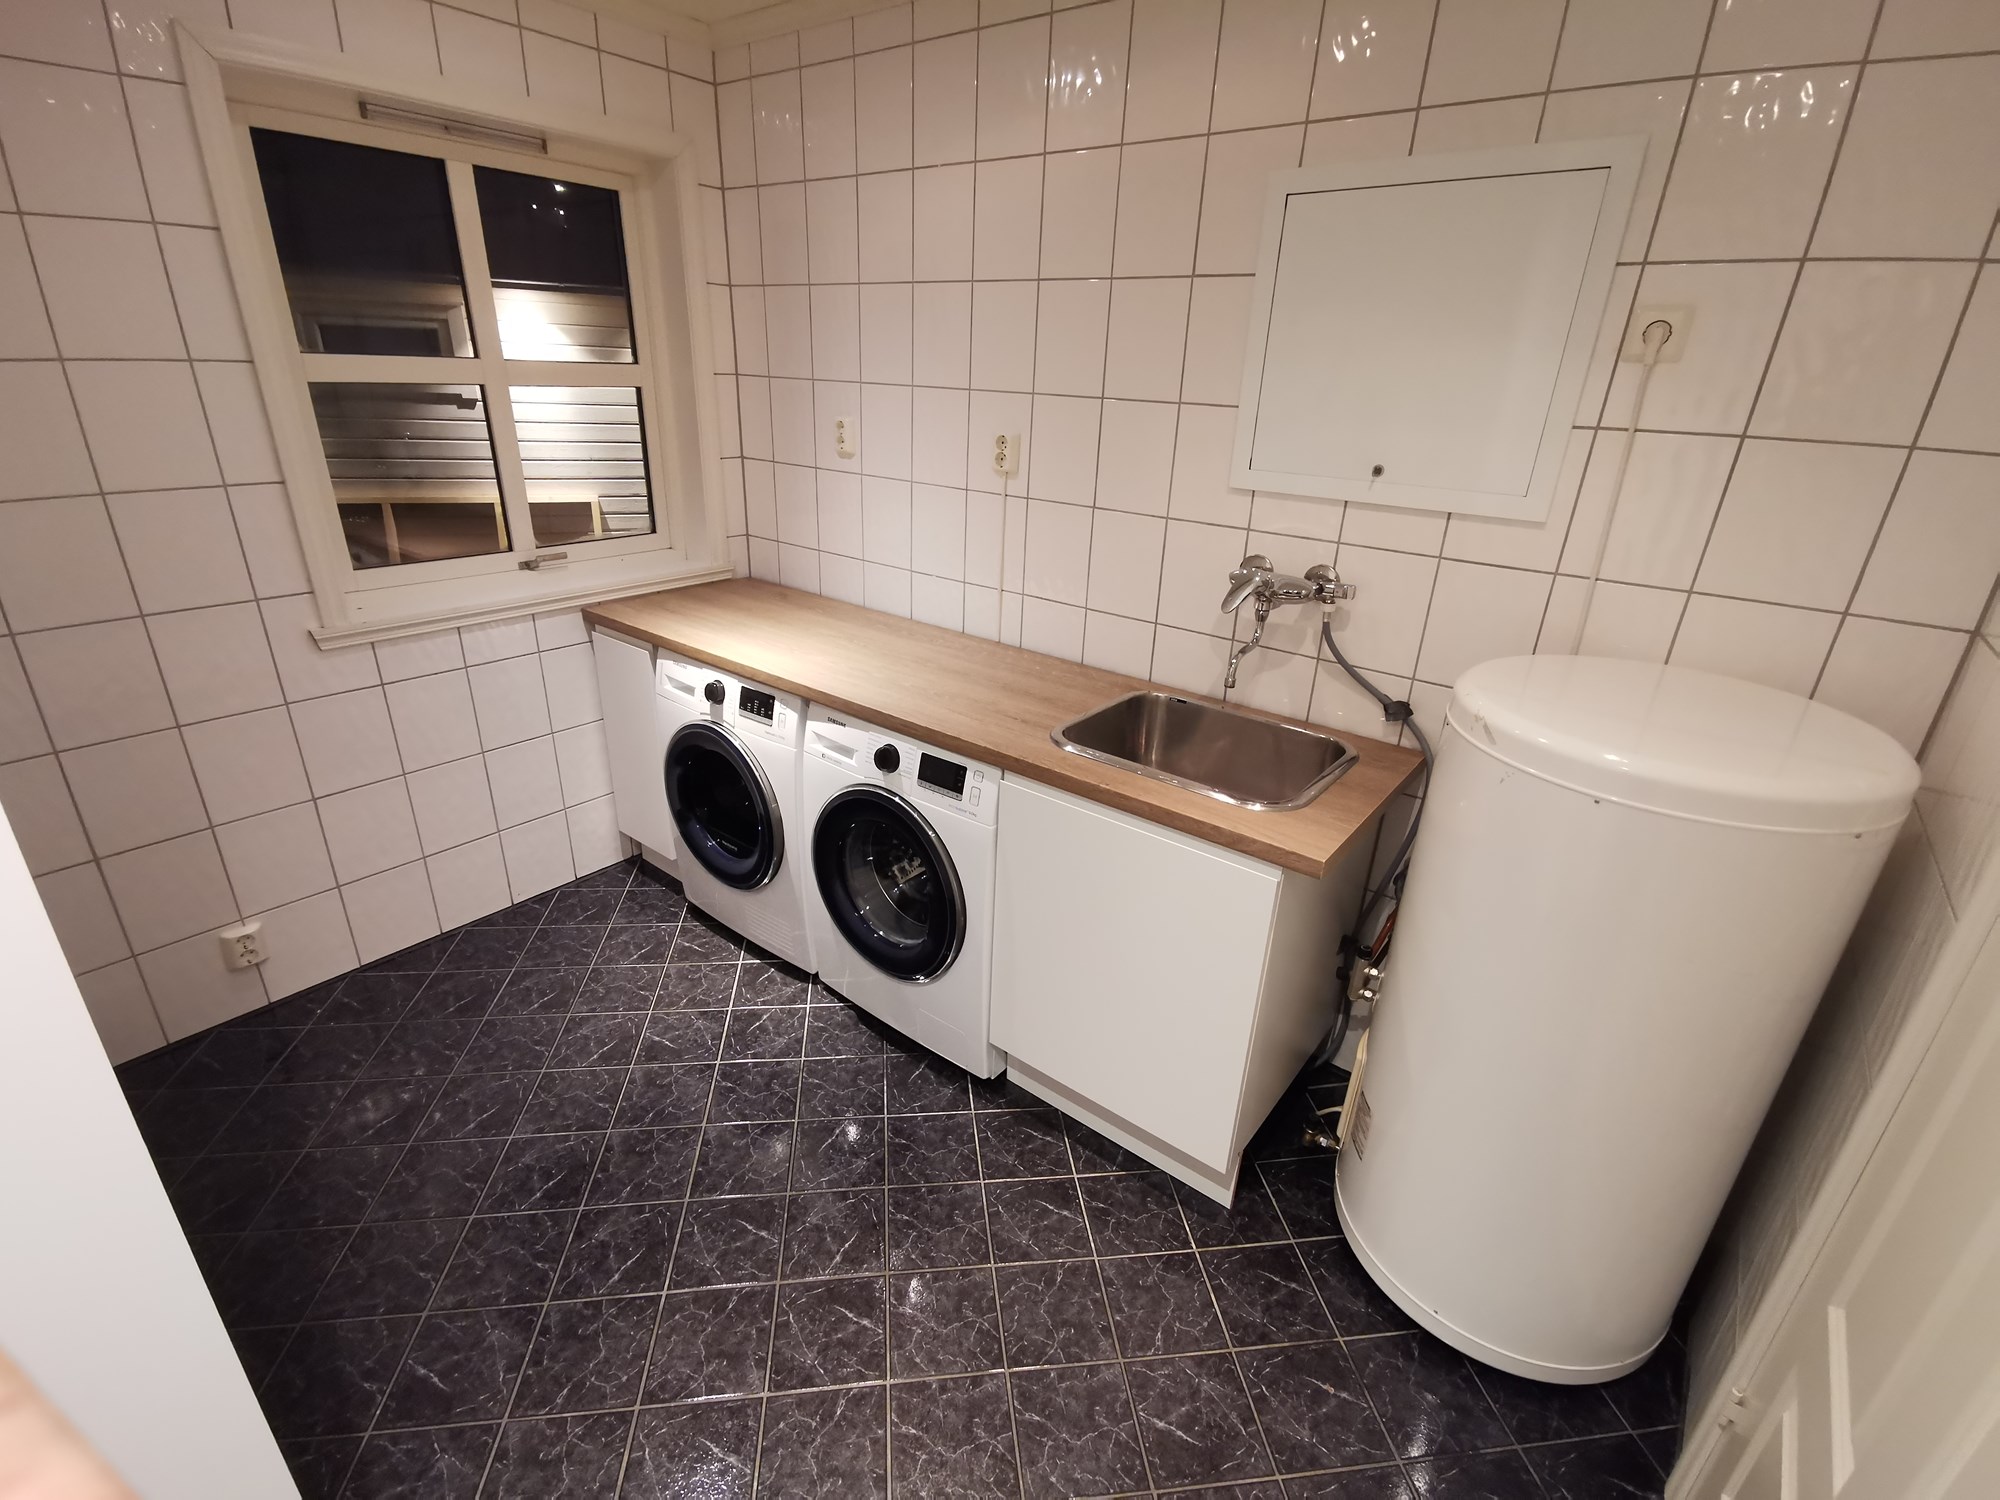 Ikea kjøkkeninnredning på vaskerom? - IMG_20210105_211537.jpg - ProphetSe7en